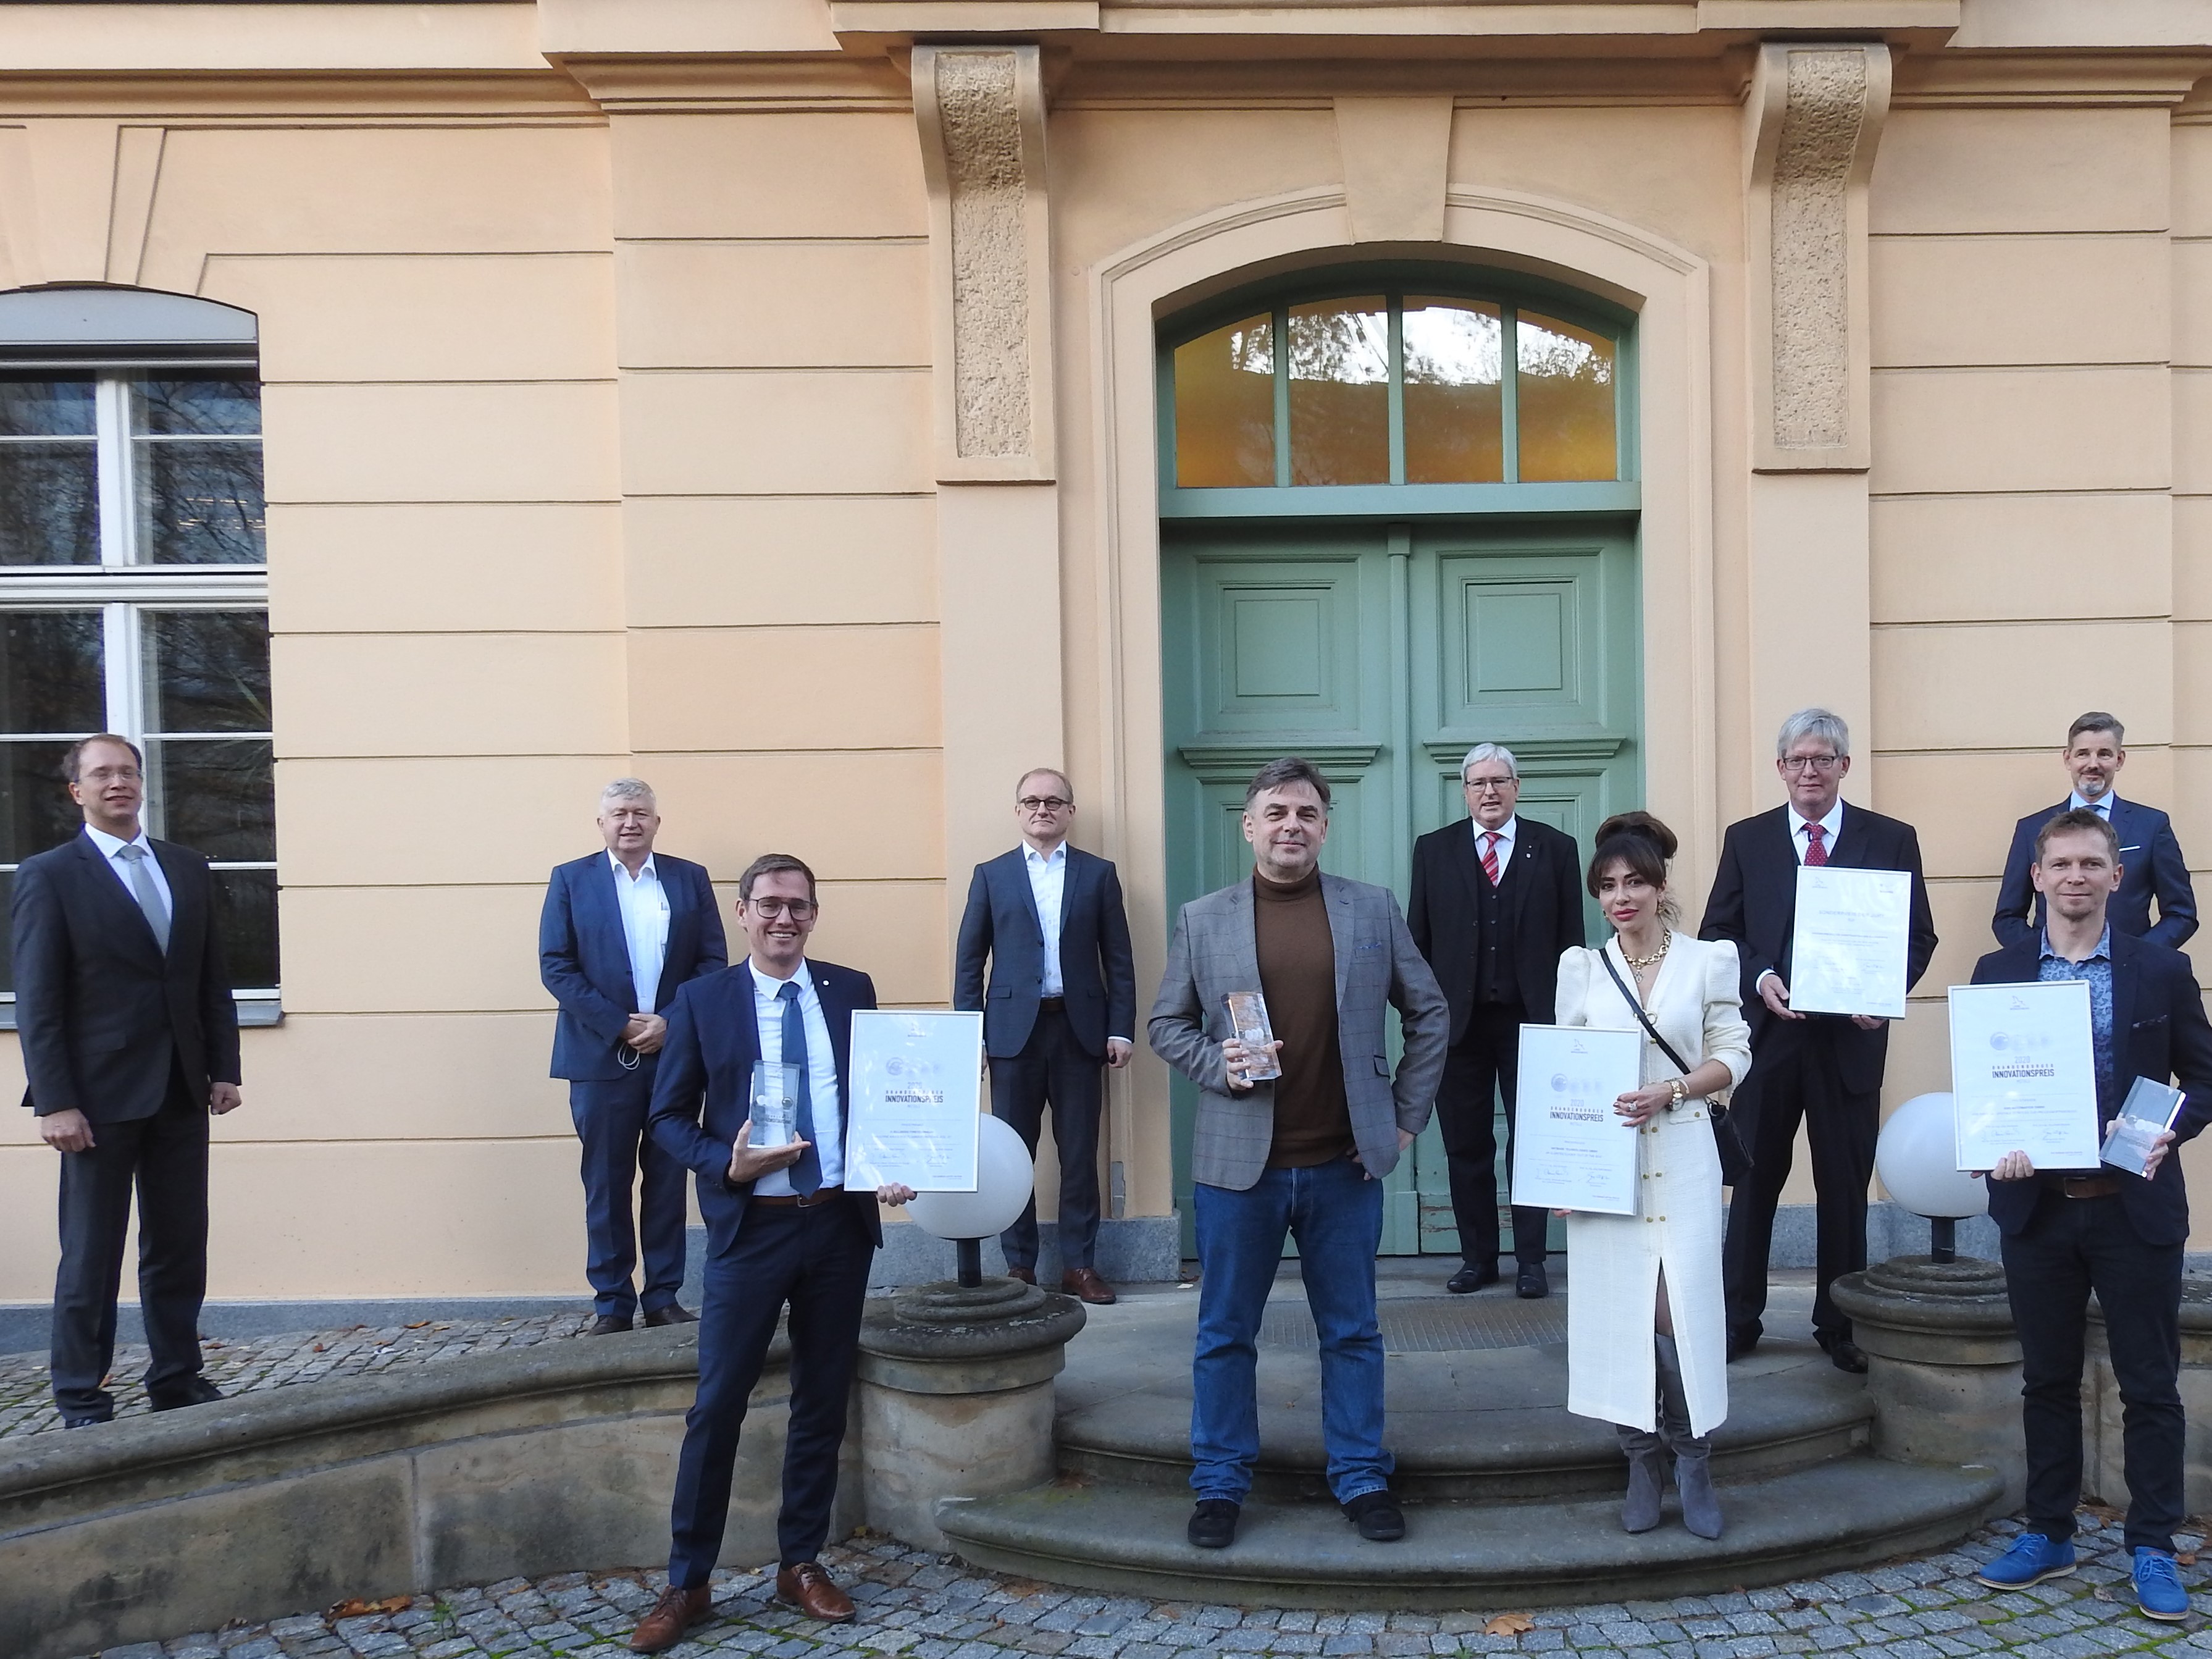 Gruppenfoto mit Preisträgern des Brandenburger Innovationspreises 2020